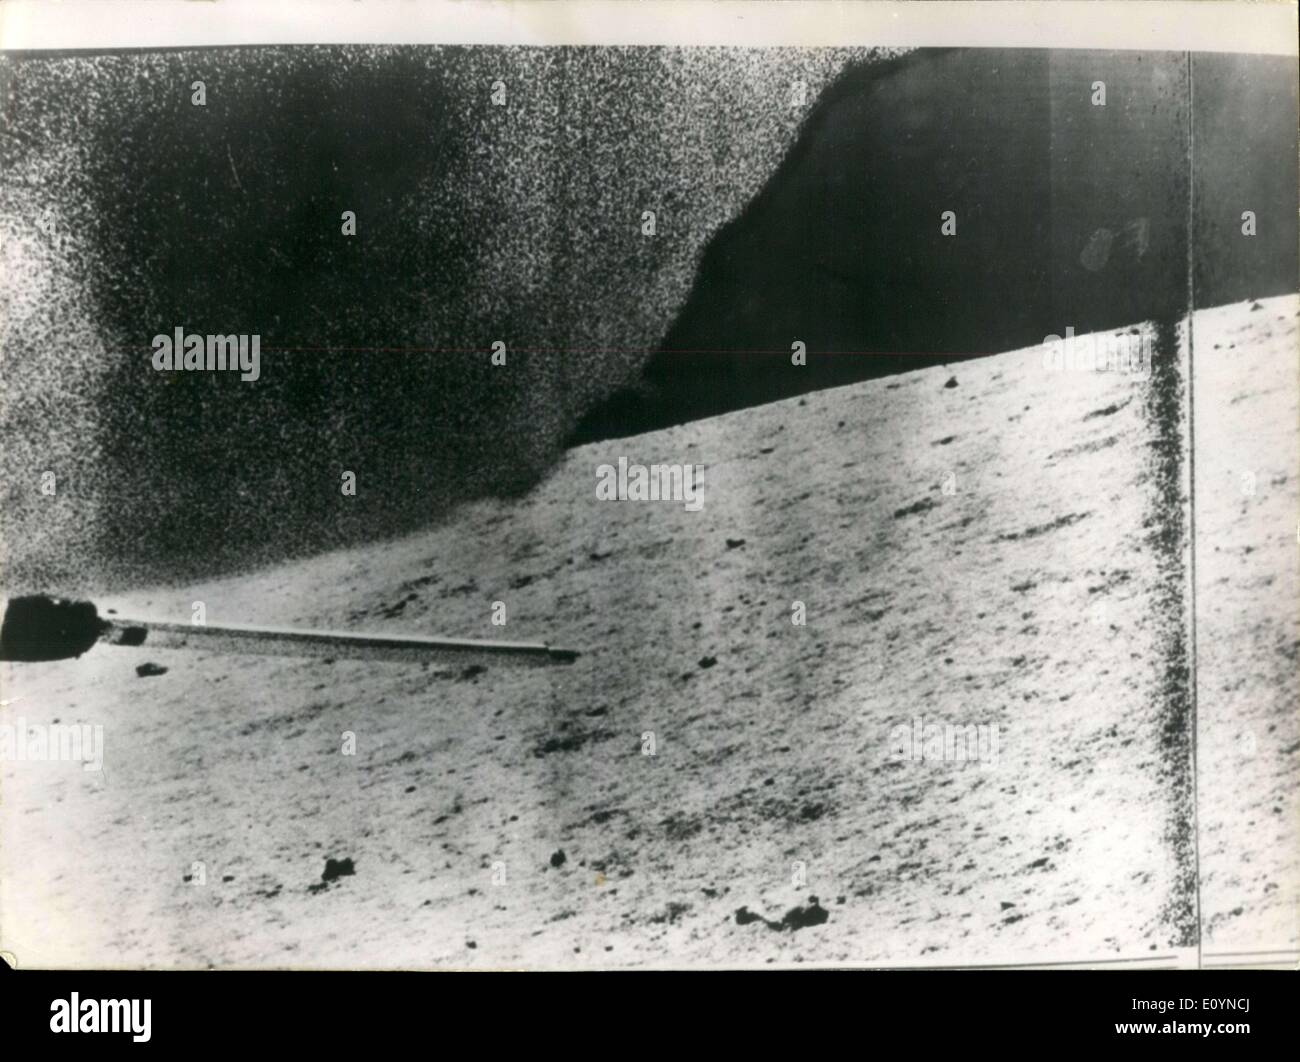 Le 23 novembre 1970 - ''Rover soviétique Luna-17'' envoie des images du sol lunaire Études Banque D'Images